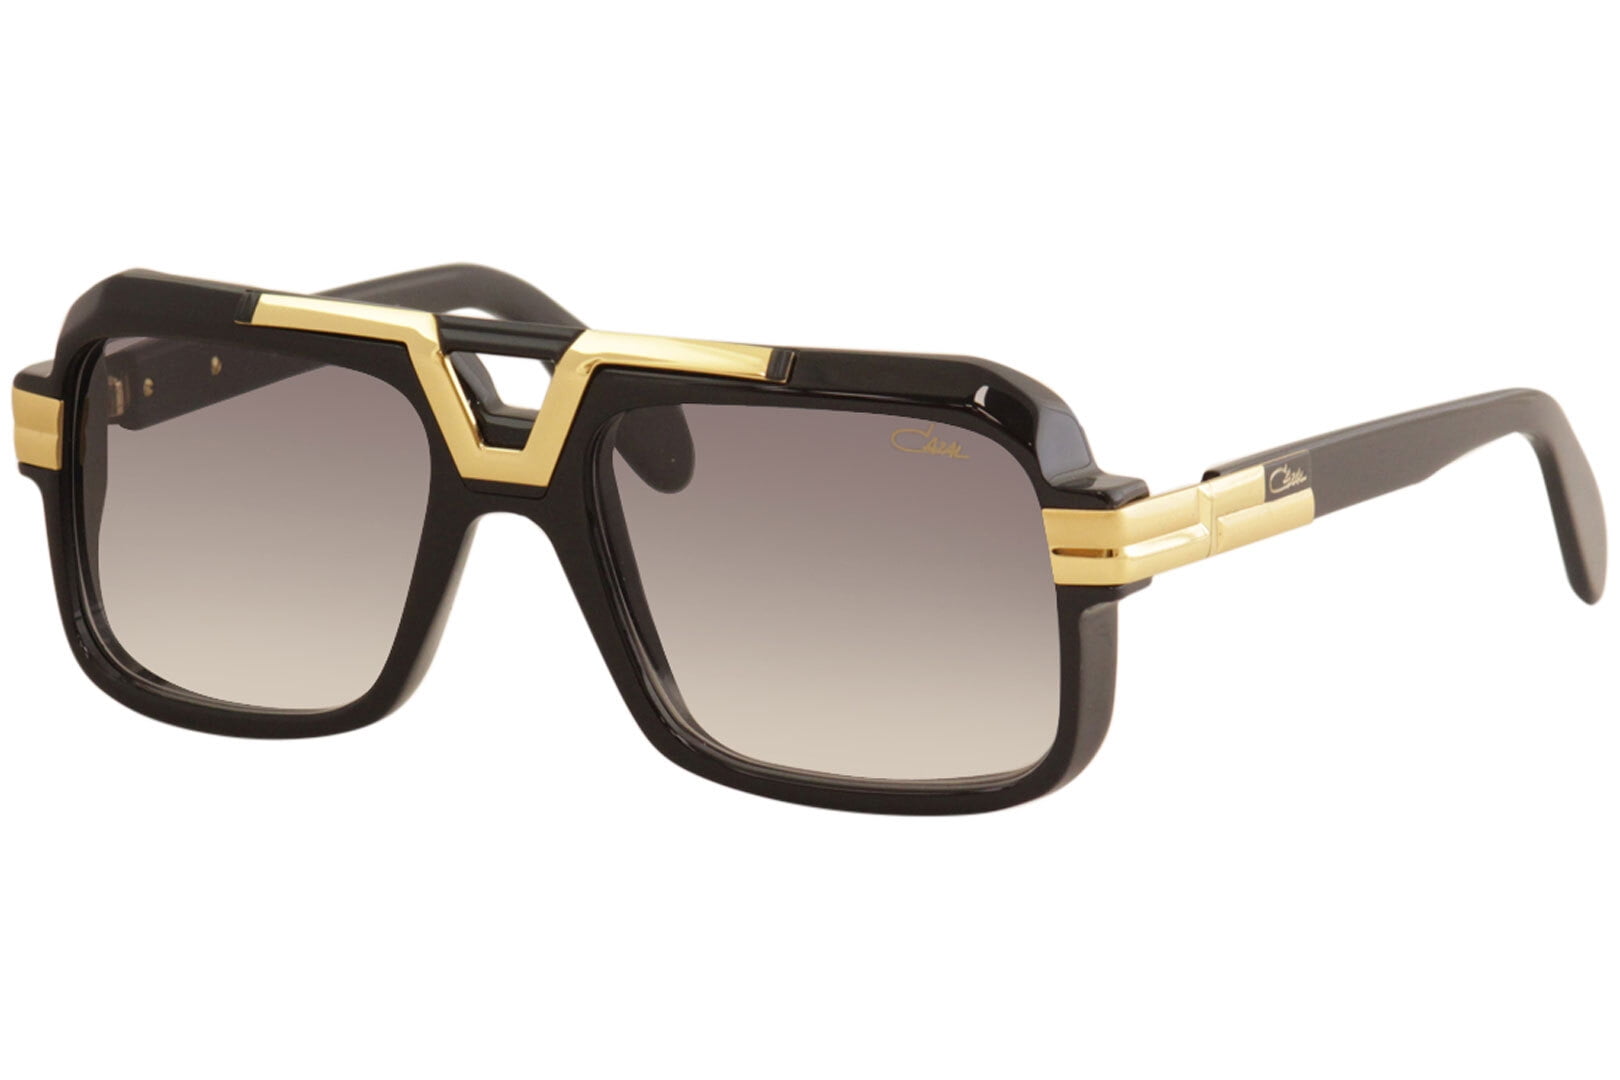 CAZAL Sunglasses Cazal 9081 001 Black Grey Gradient 62 16 140 100% Authentic 